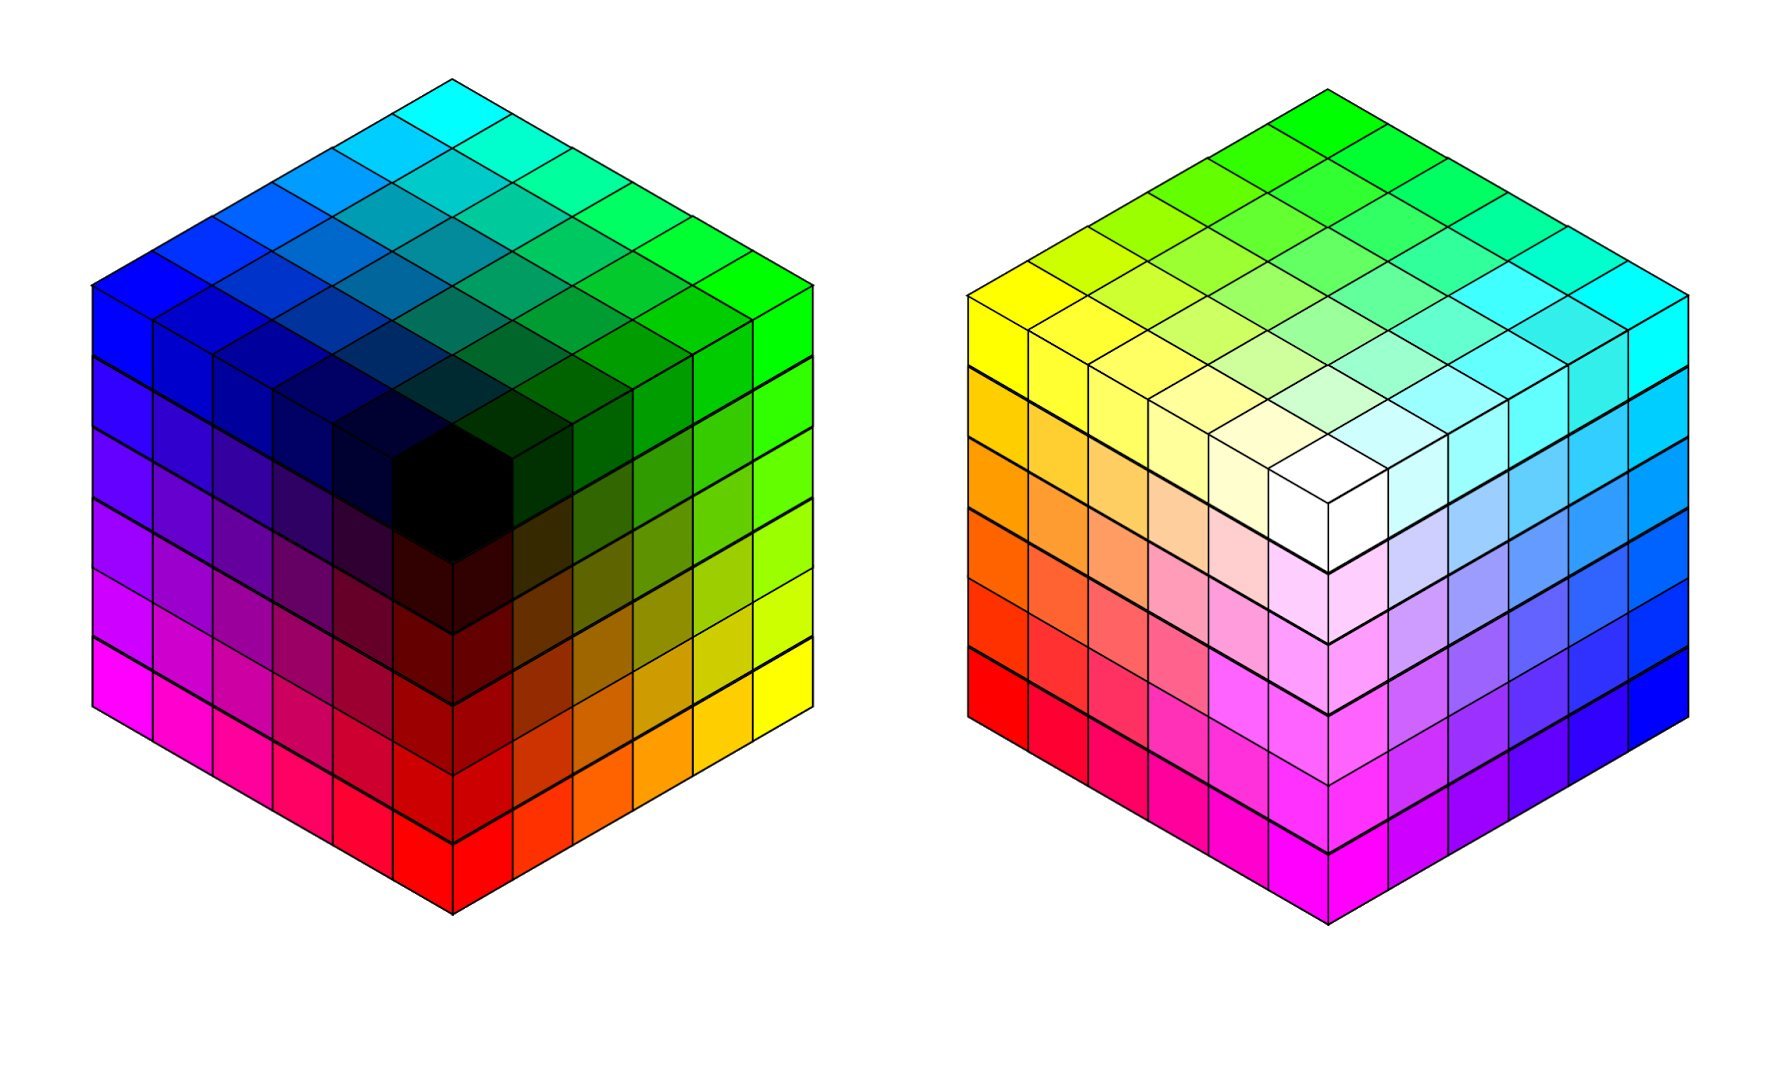 Cube цвет. Модель РГБ куб. Цветовая модель RGB куб. Цветовой куб РГБ. Цветовая модель Смук куб.